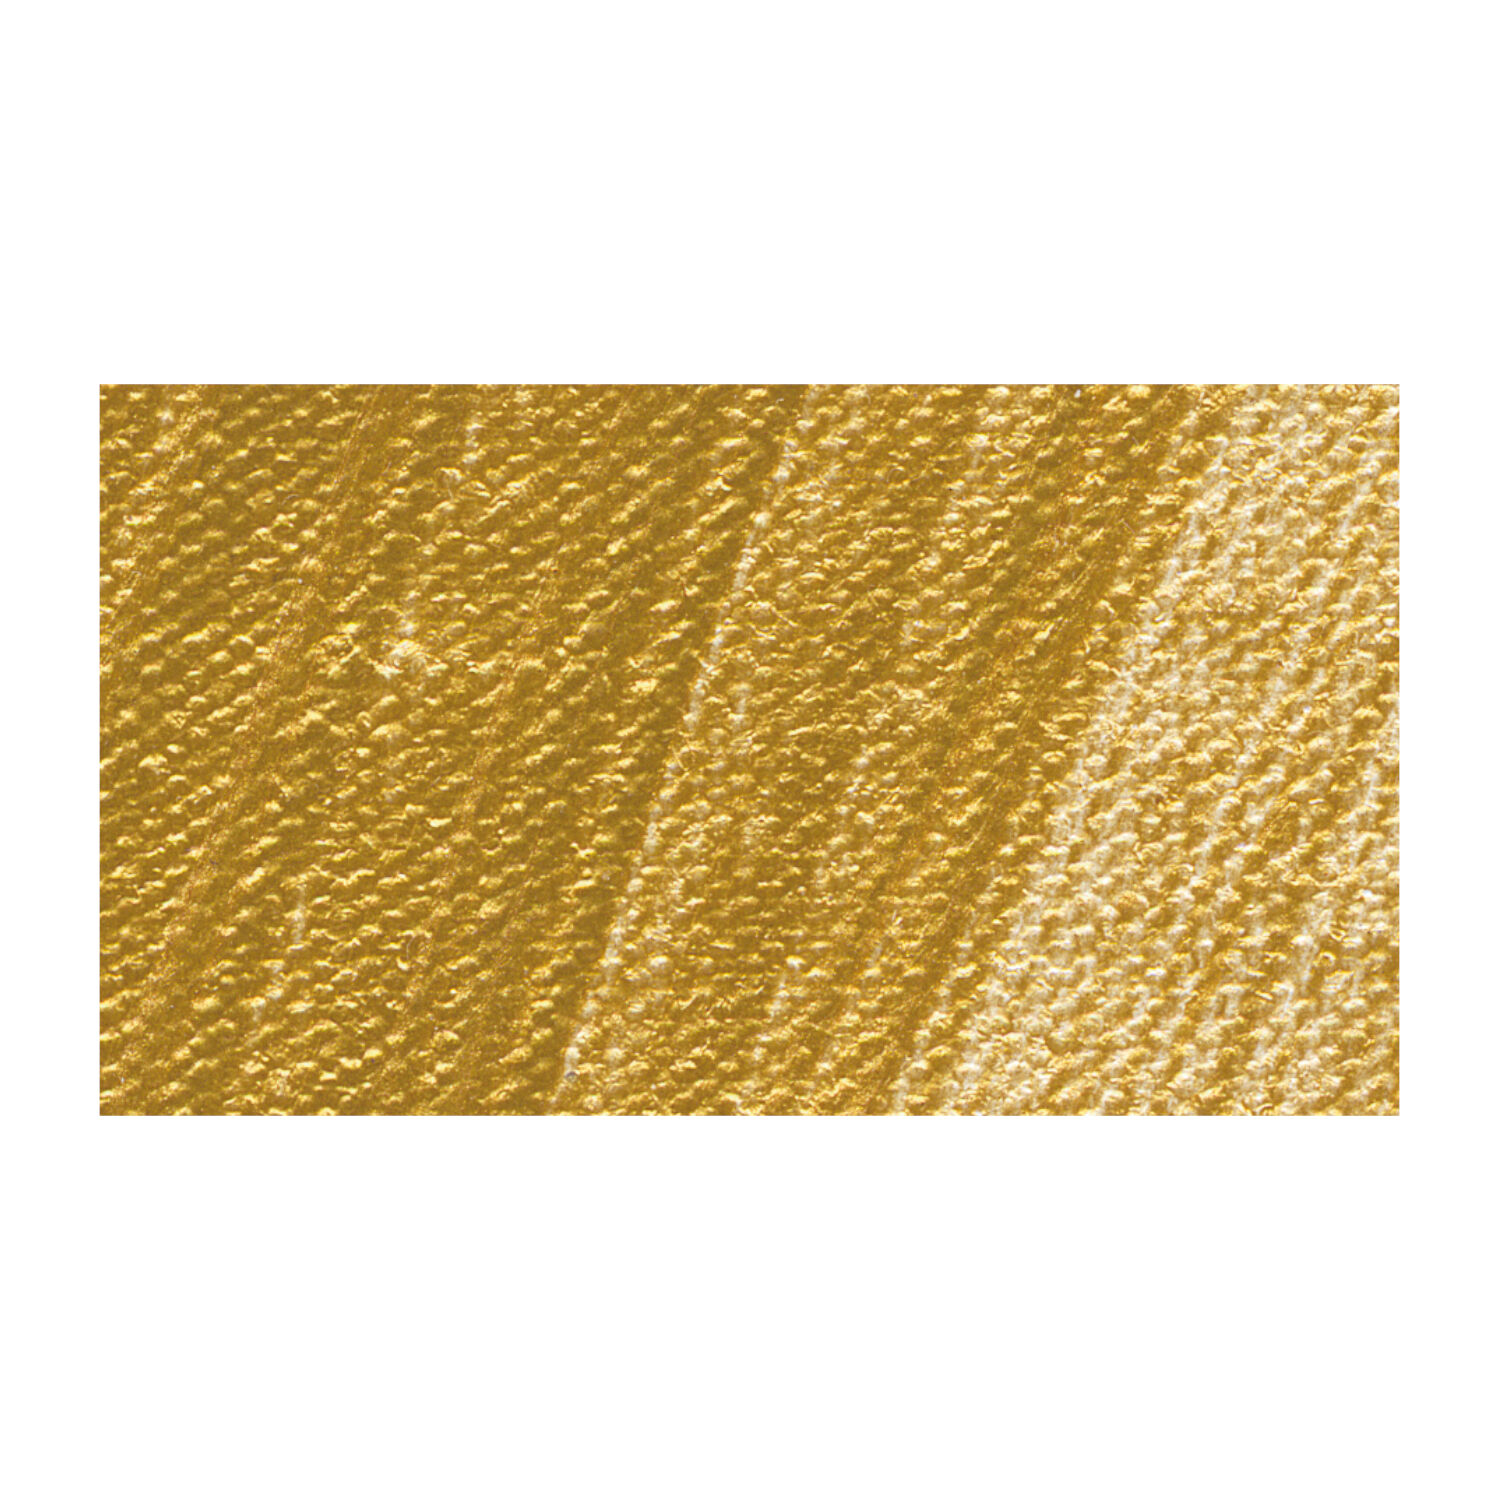 Akademie-Acryl 250ml, Gold Bild 2